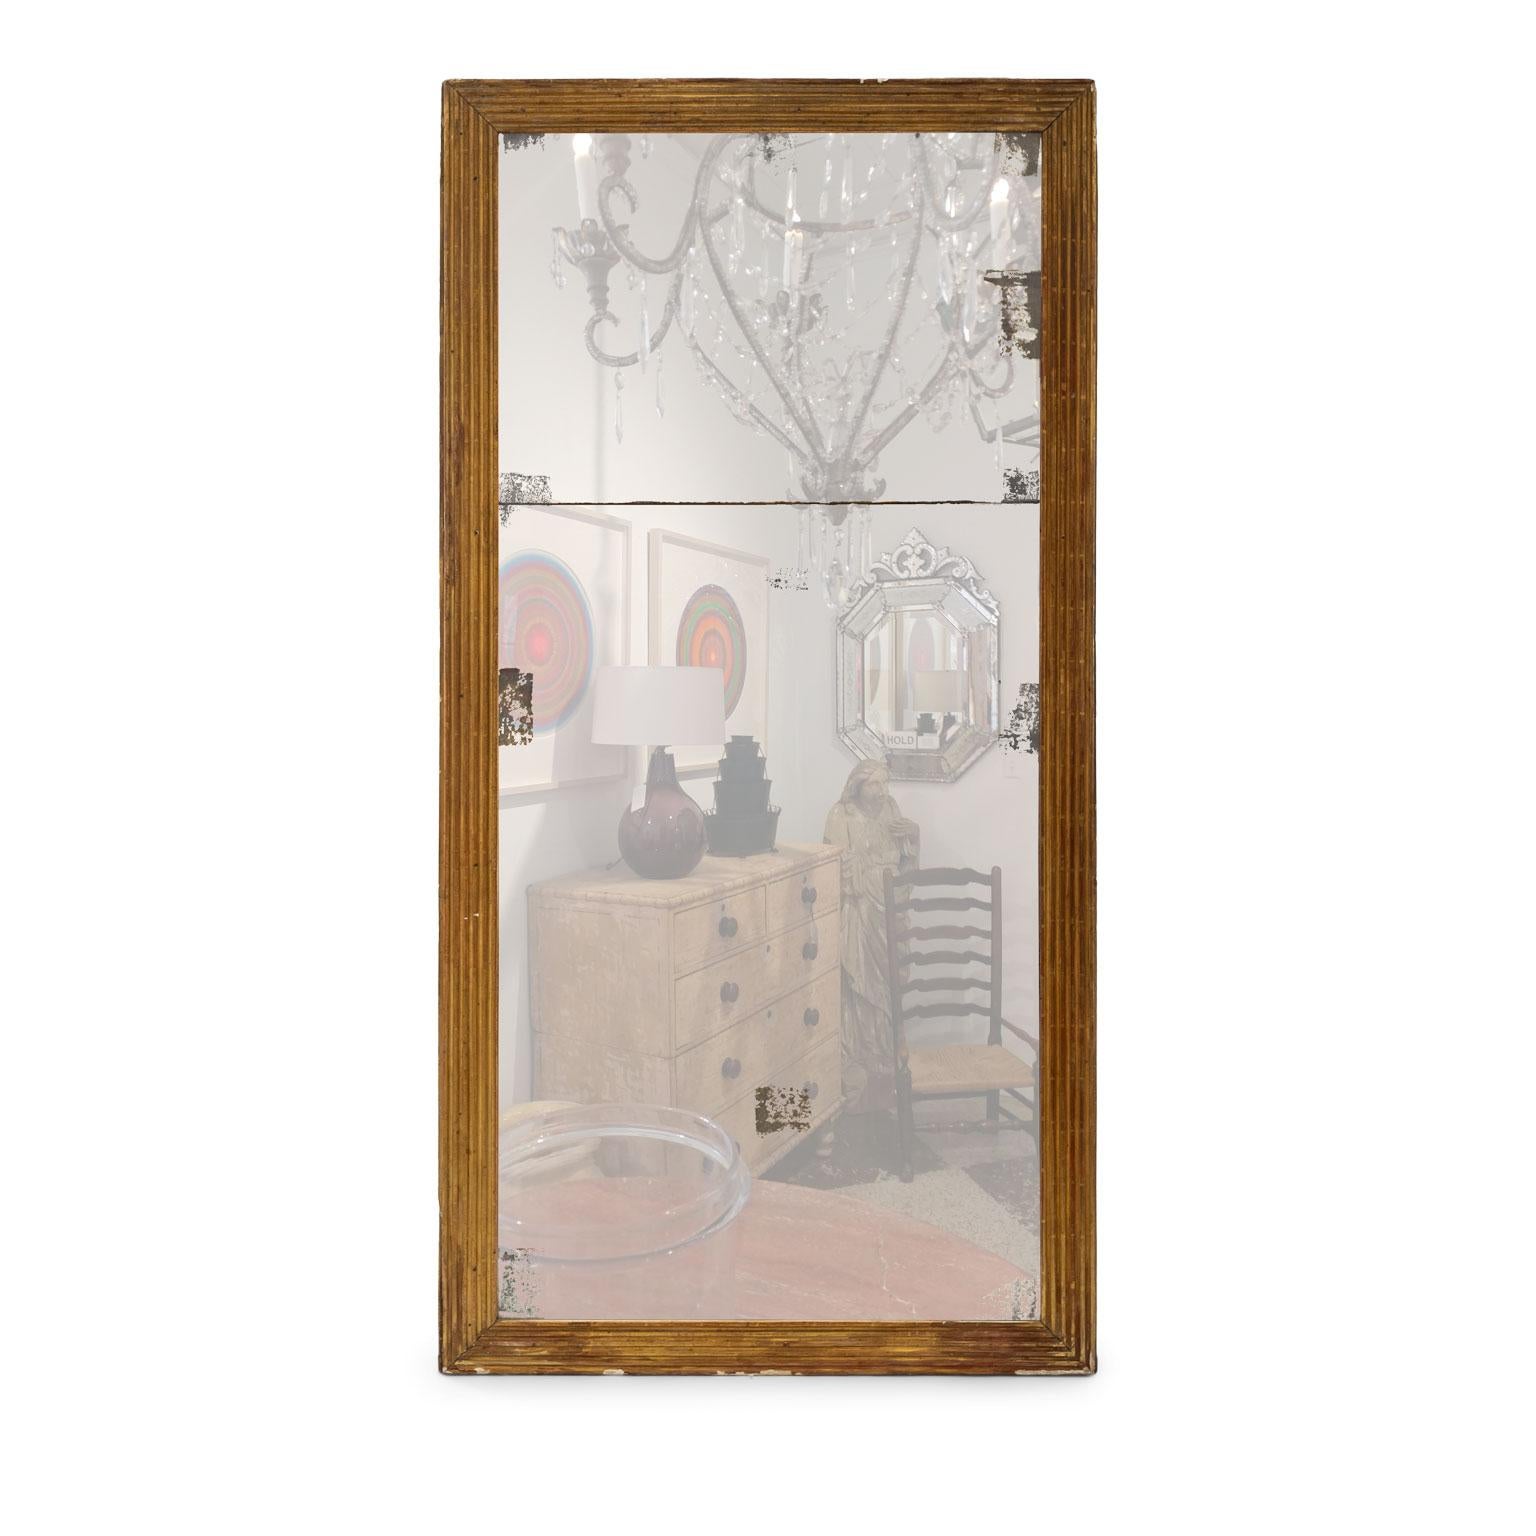 Frühes 19. Jahrhundert kannelierter Spiegelrahmen aus Goldholz, der die originale Quecksilberspiegel-Split-Platte umgibt. Das Spiegelglas weist Verluste auf der versilberten Rückseite und Diamantstaub an den Rändern auf.

Hinweis: Regionale